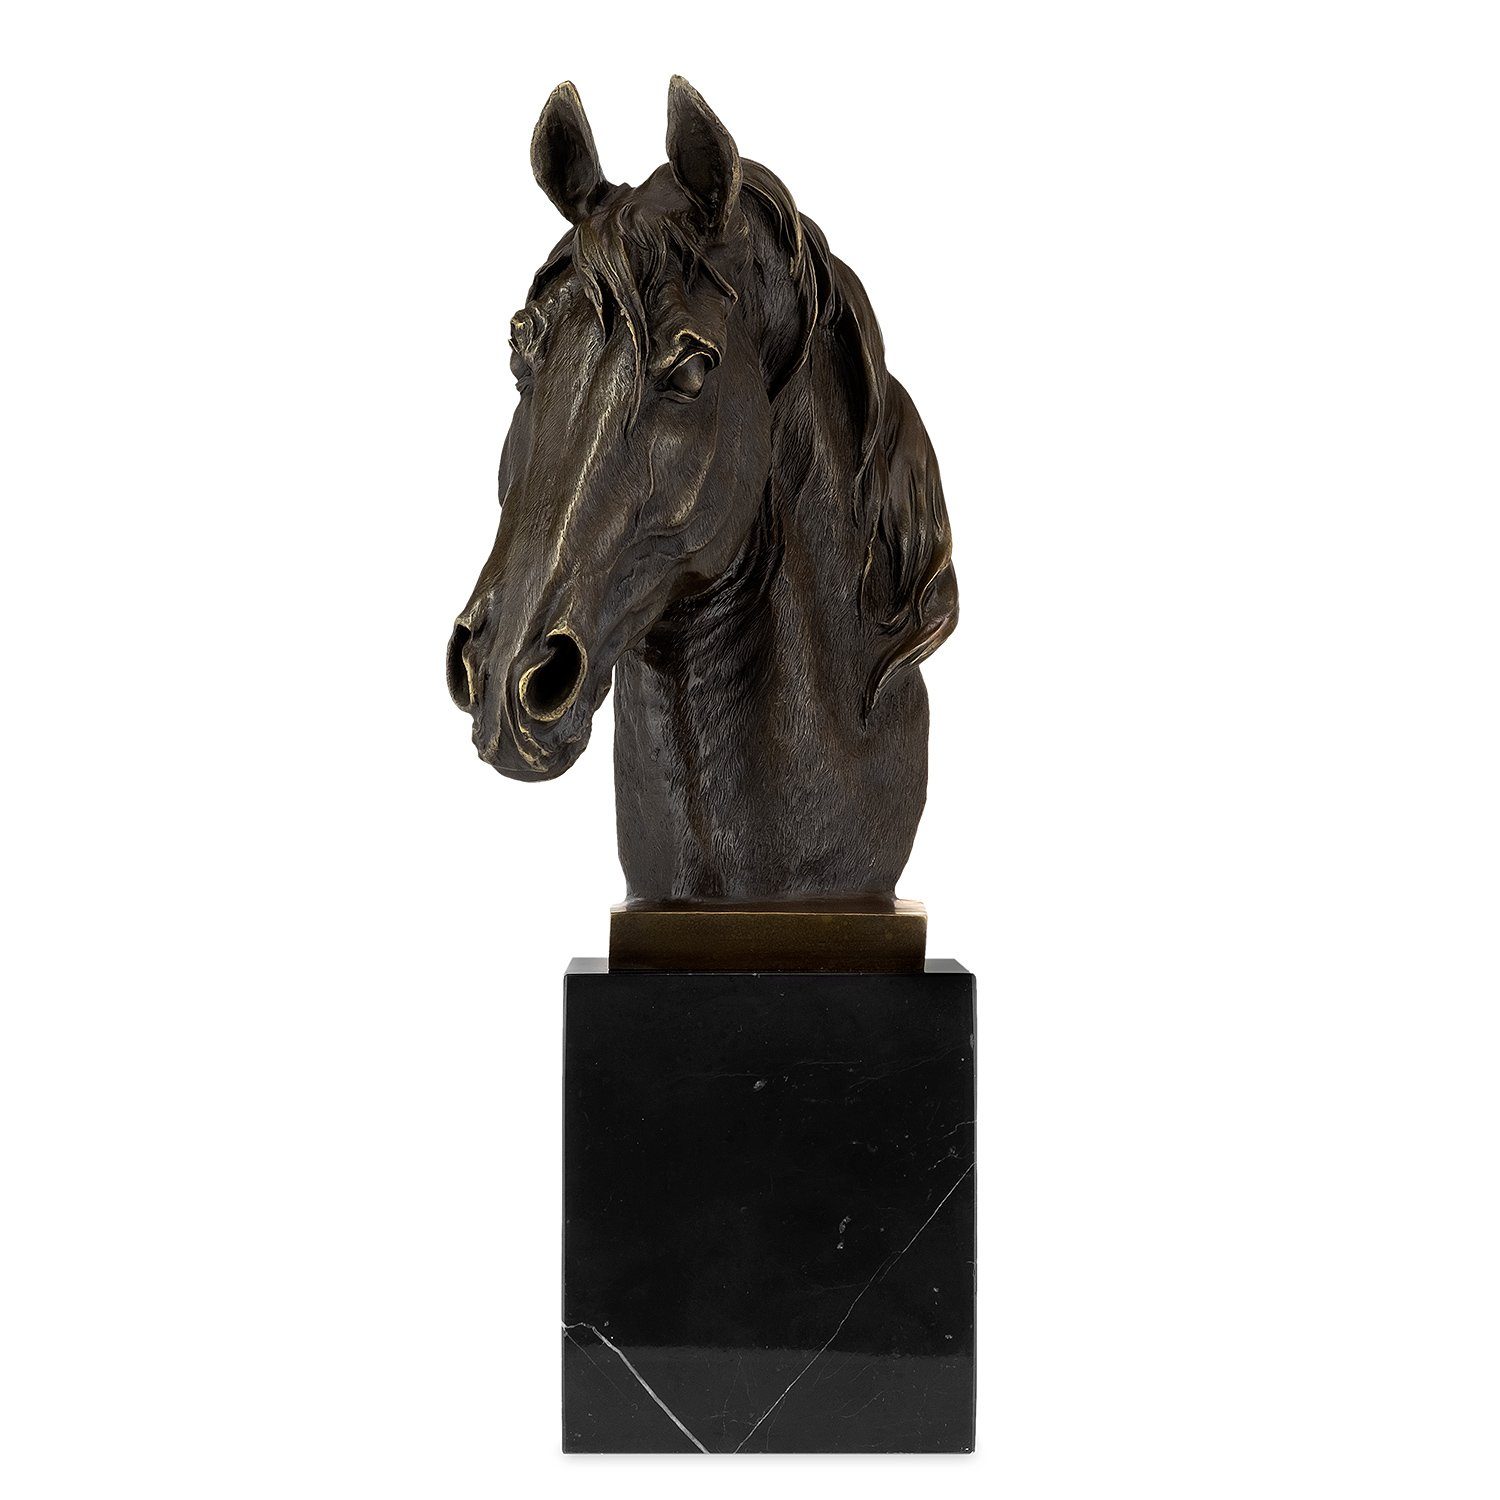 Moritz Dekofigur Bronzefigur Pferdekopf, Schreibtisch Skulptur Vitrine Bronzefigur Figuren Regal für Deko